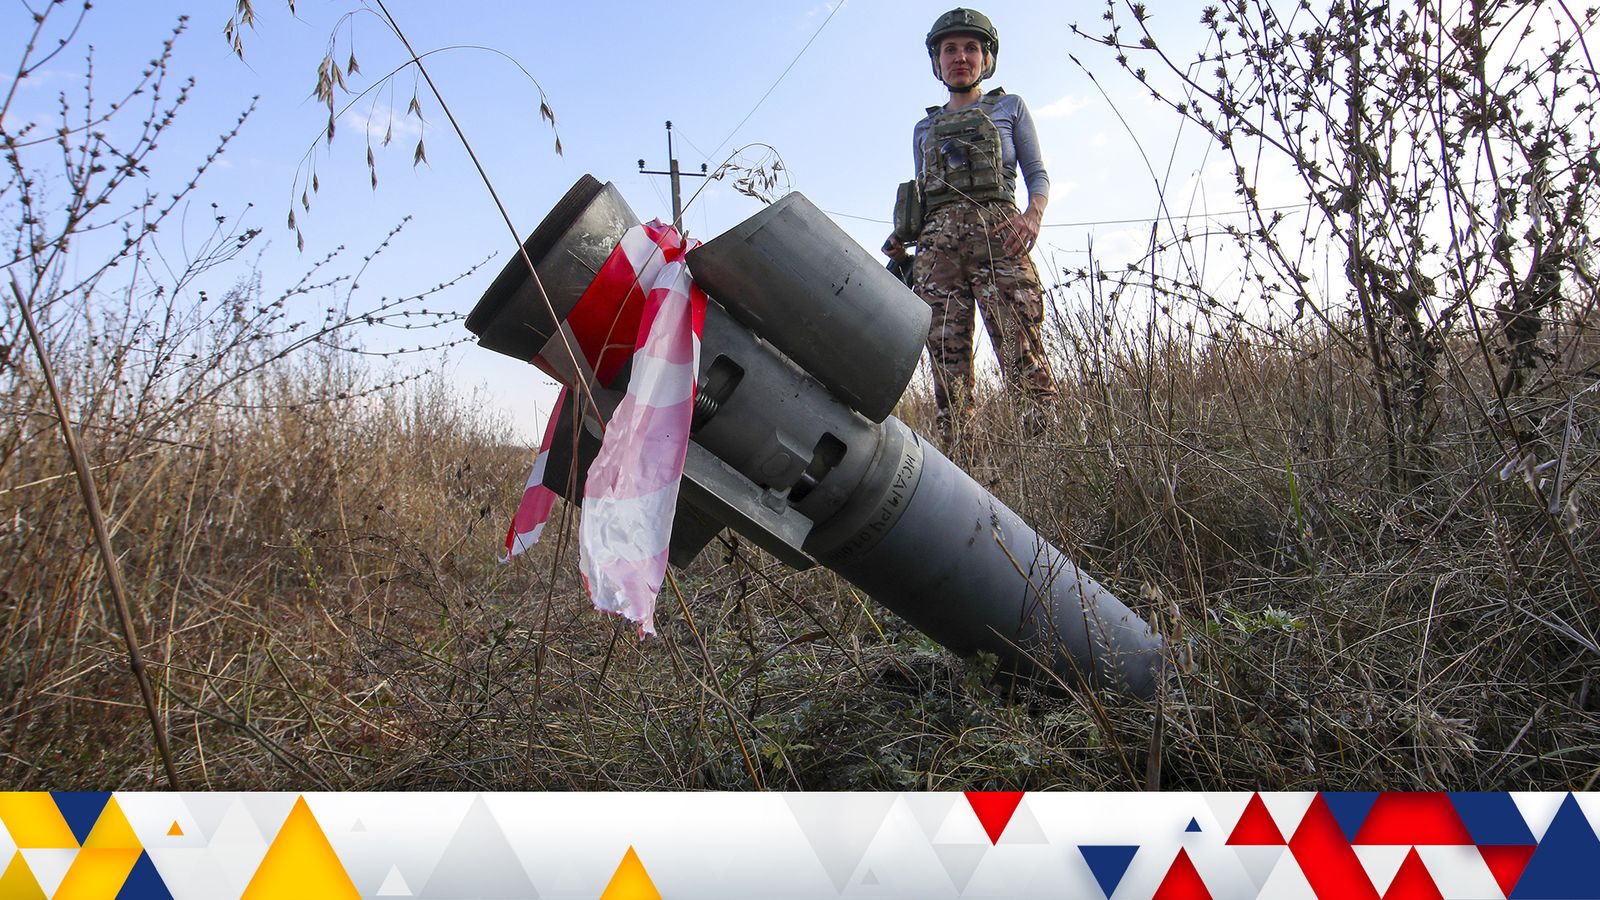 La última guerra en Ucrania: Rusia “muy probablemente” derribó uno de sus aviones más avanzados;  por qué Putin invadió Ucrania, según los expertos |  Noticias del mundo